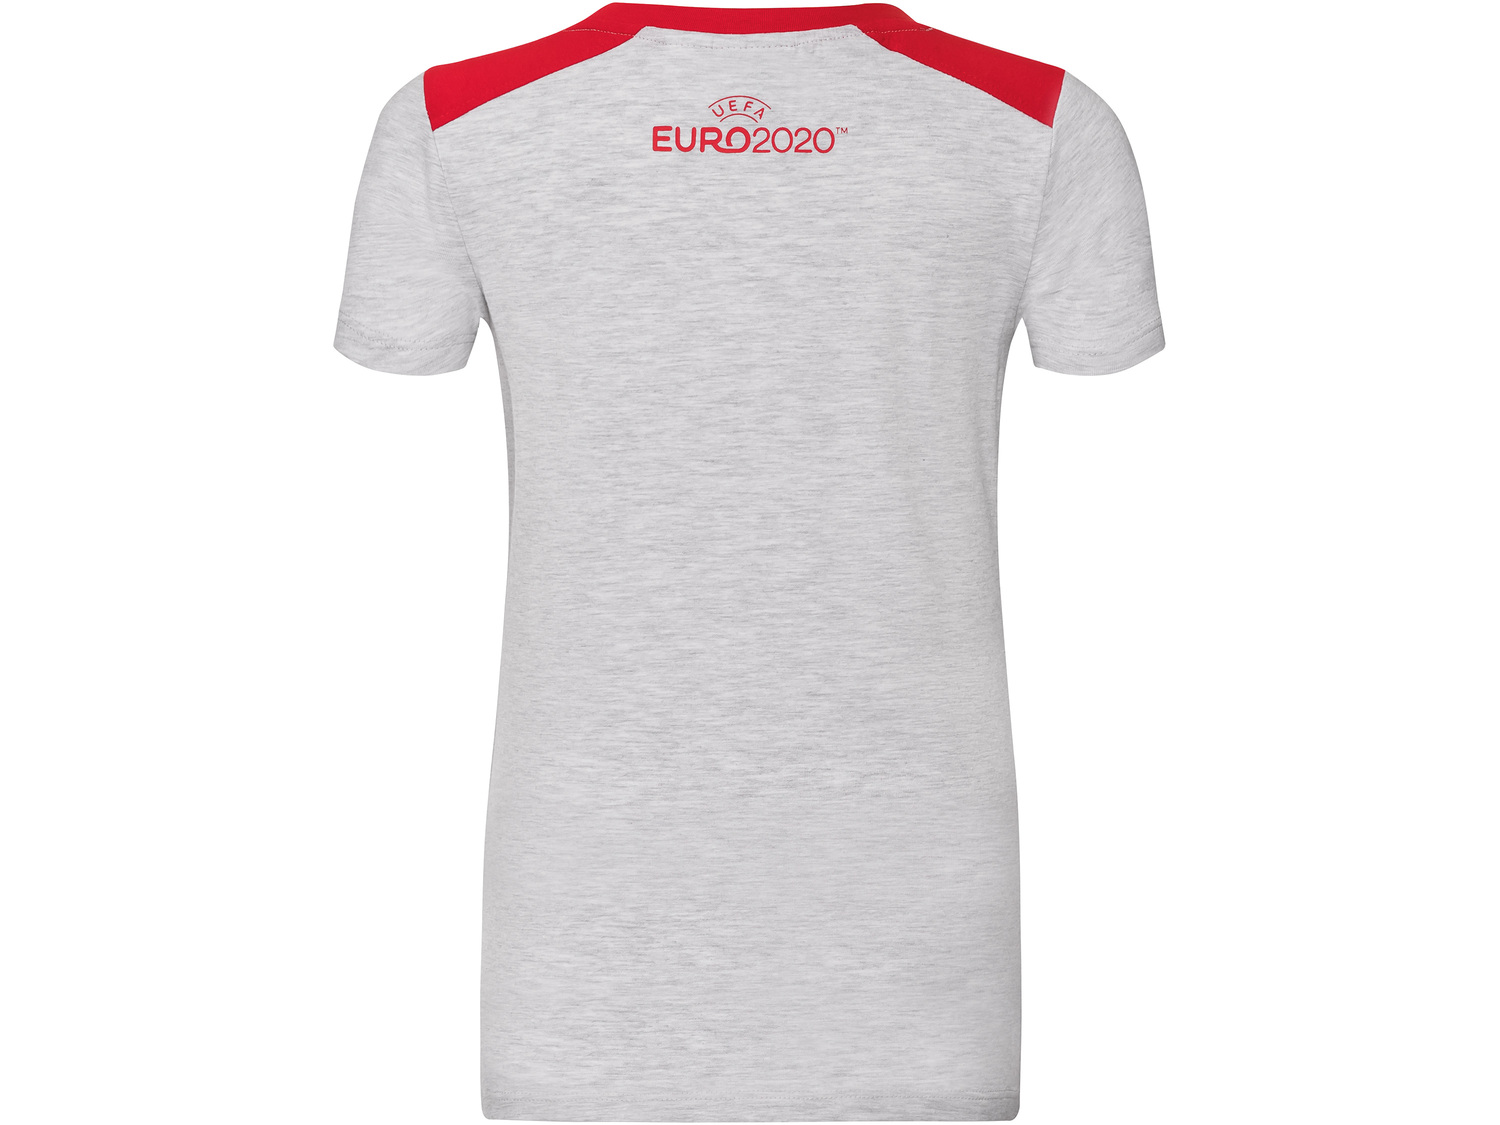 Koszulka piłkarska dziewczęca , cena 12,99 PLN 
- rozmiary: 110-164
- wysoka ...